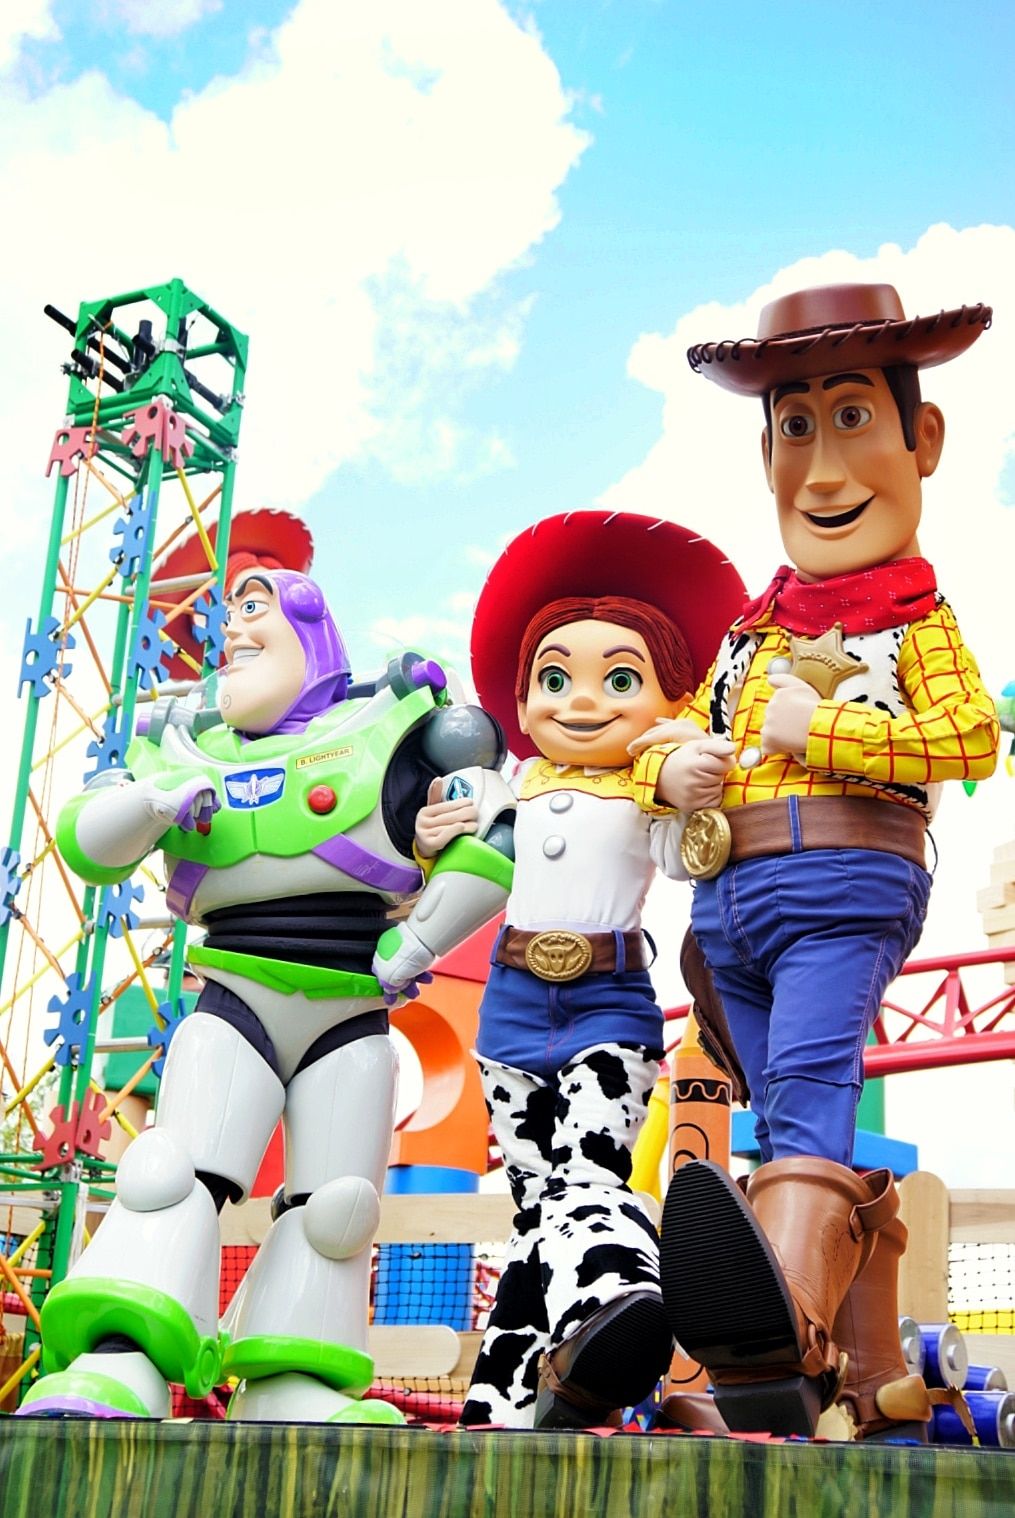 Postavy Toy Story zveřejňované na zasvěcení půdy Toy Story